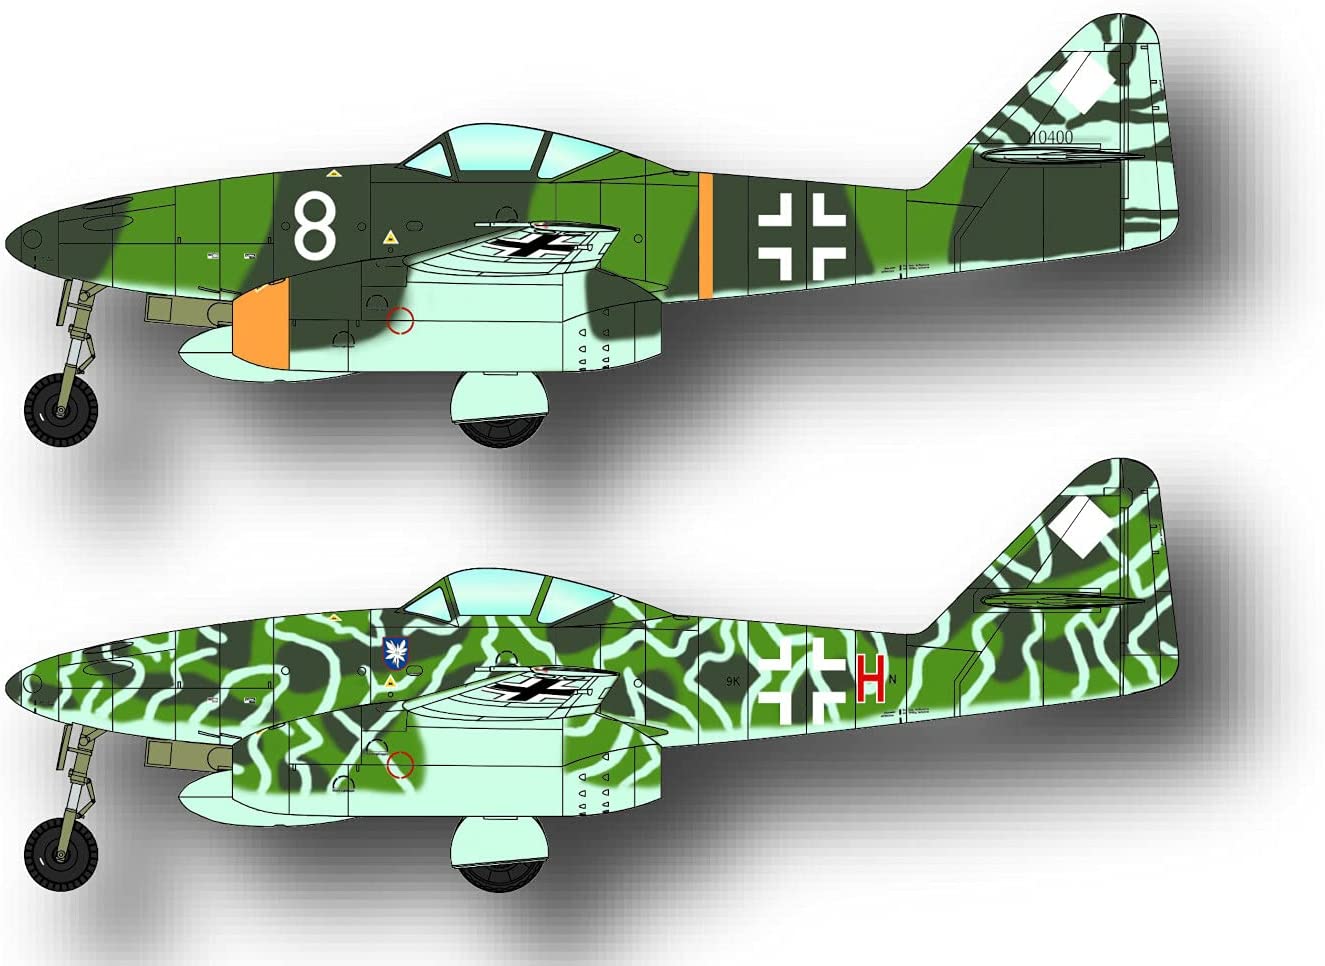 Messerschmitt Me262A-1a